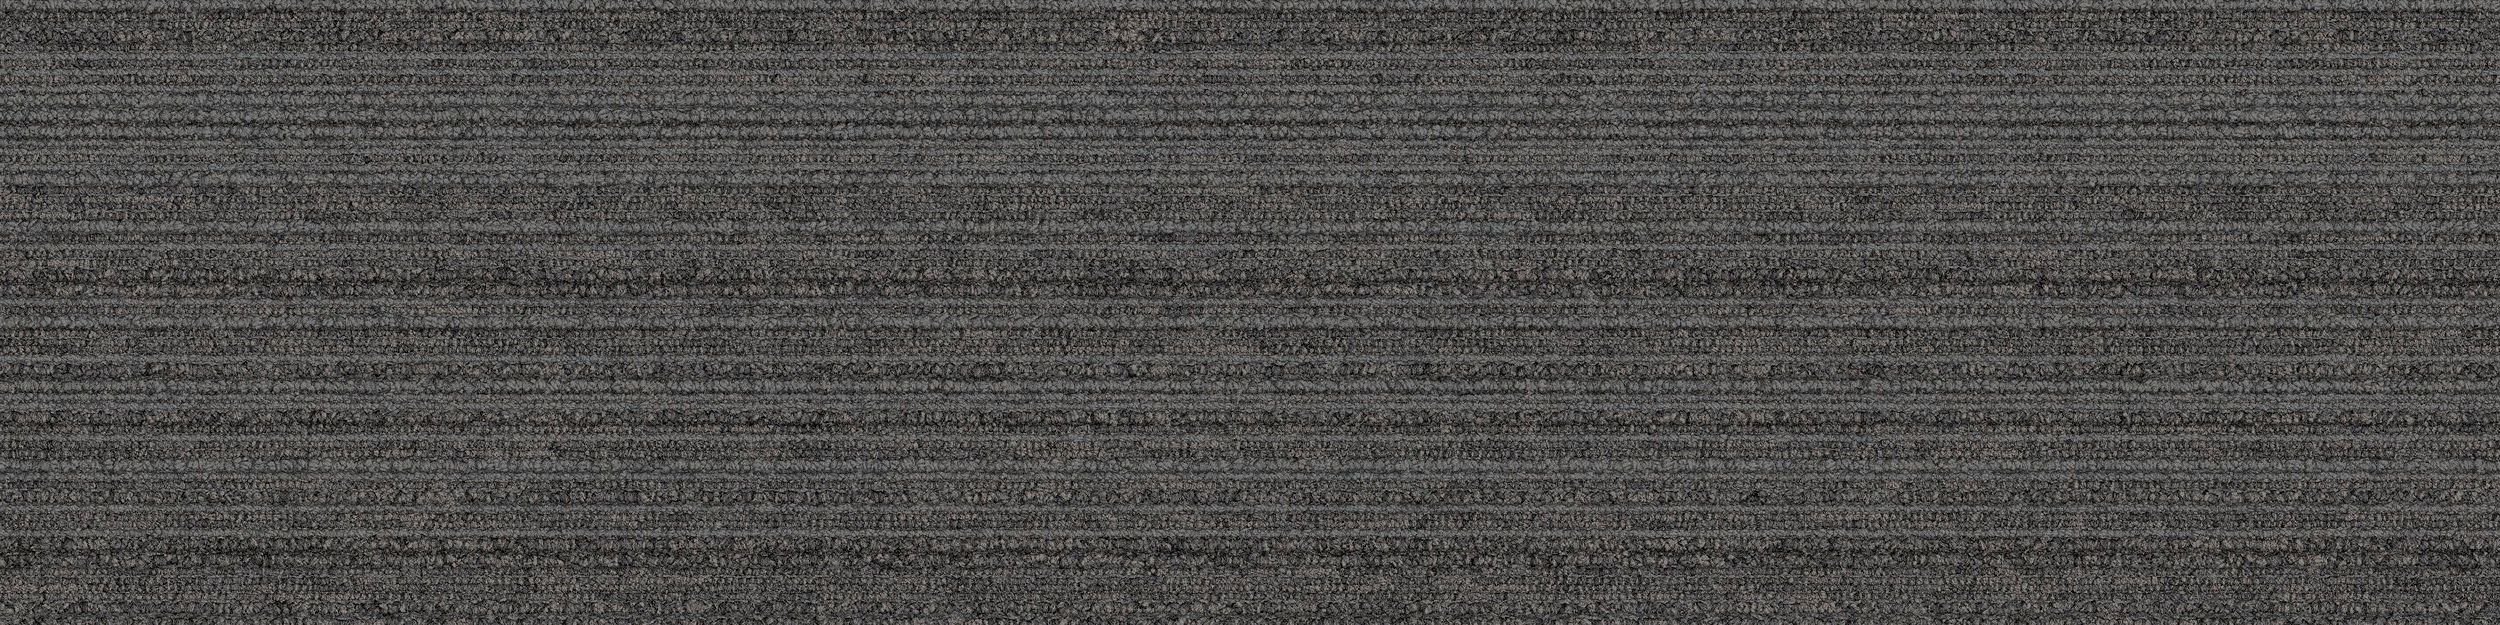 SL910 Carpet Tile In Graphite image number 2